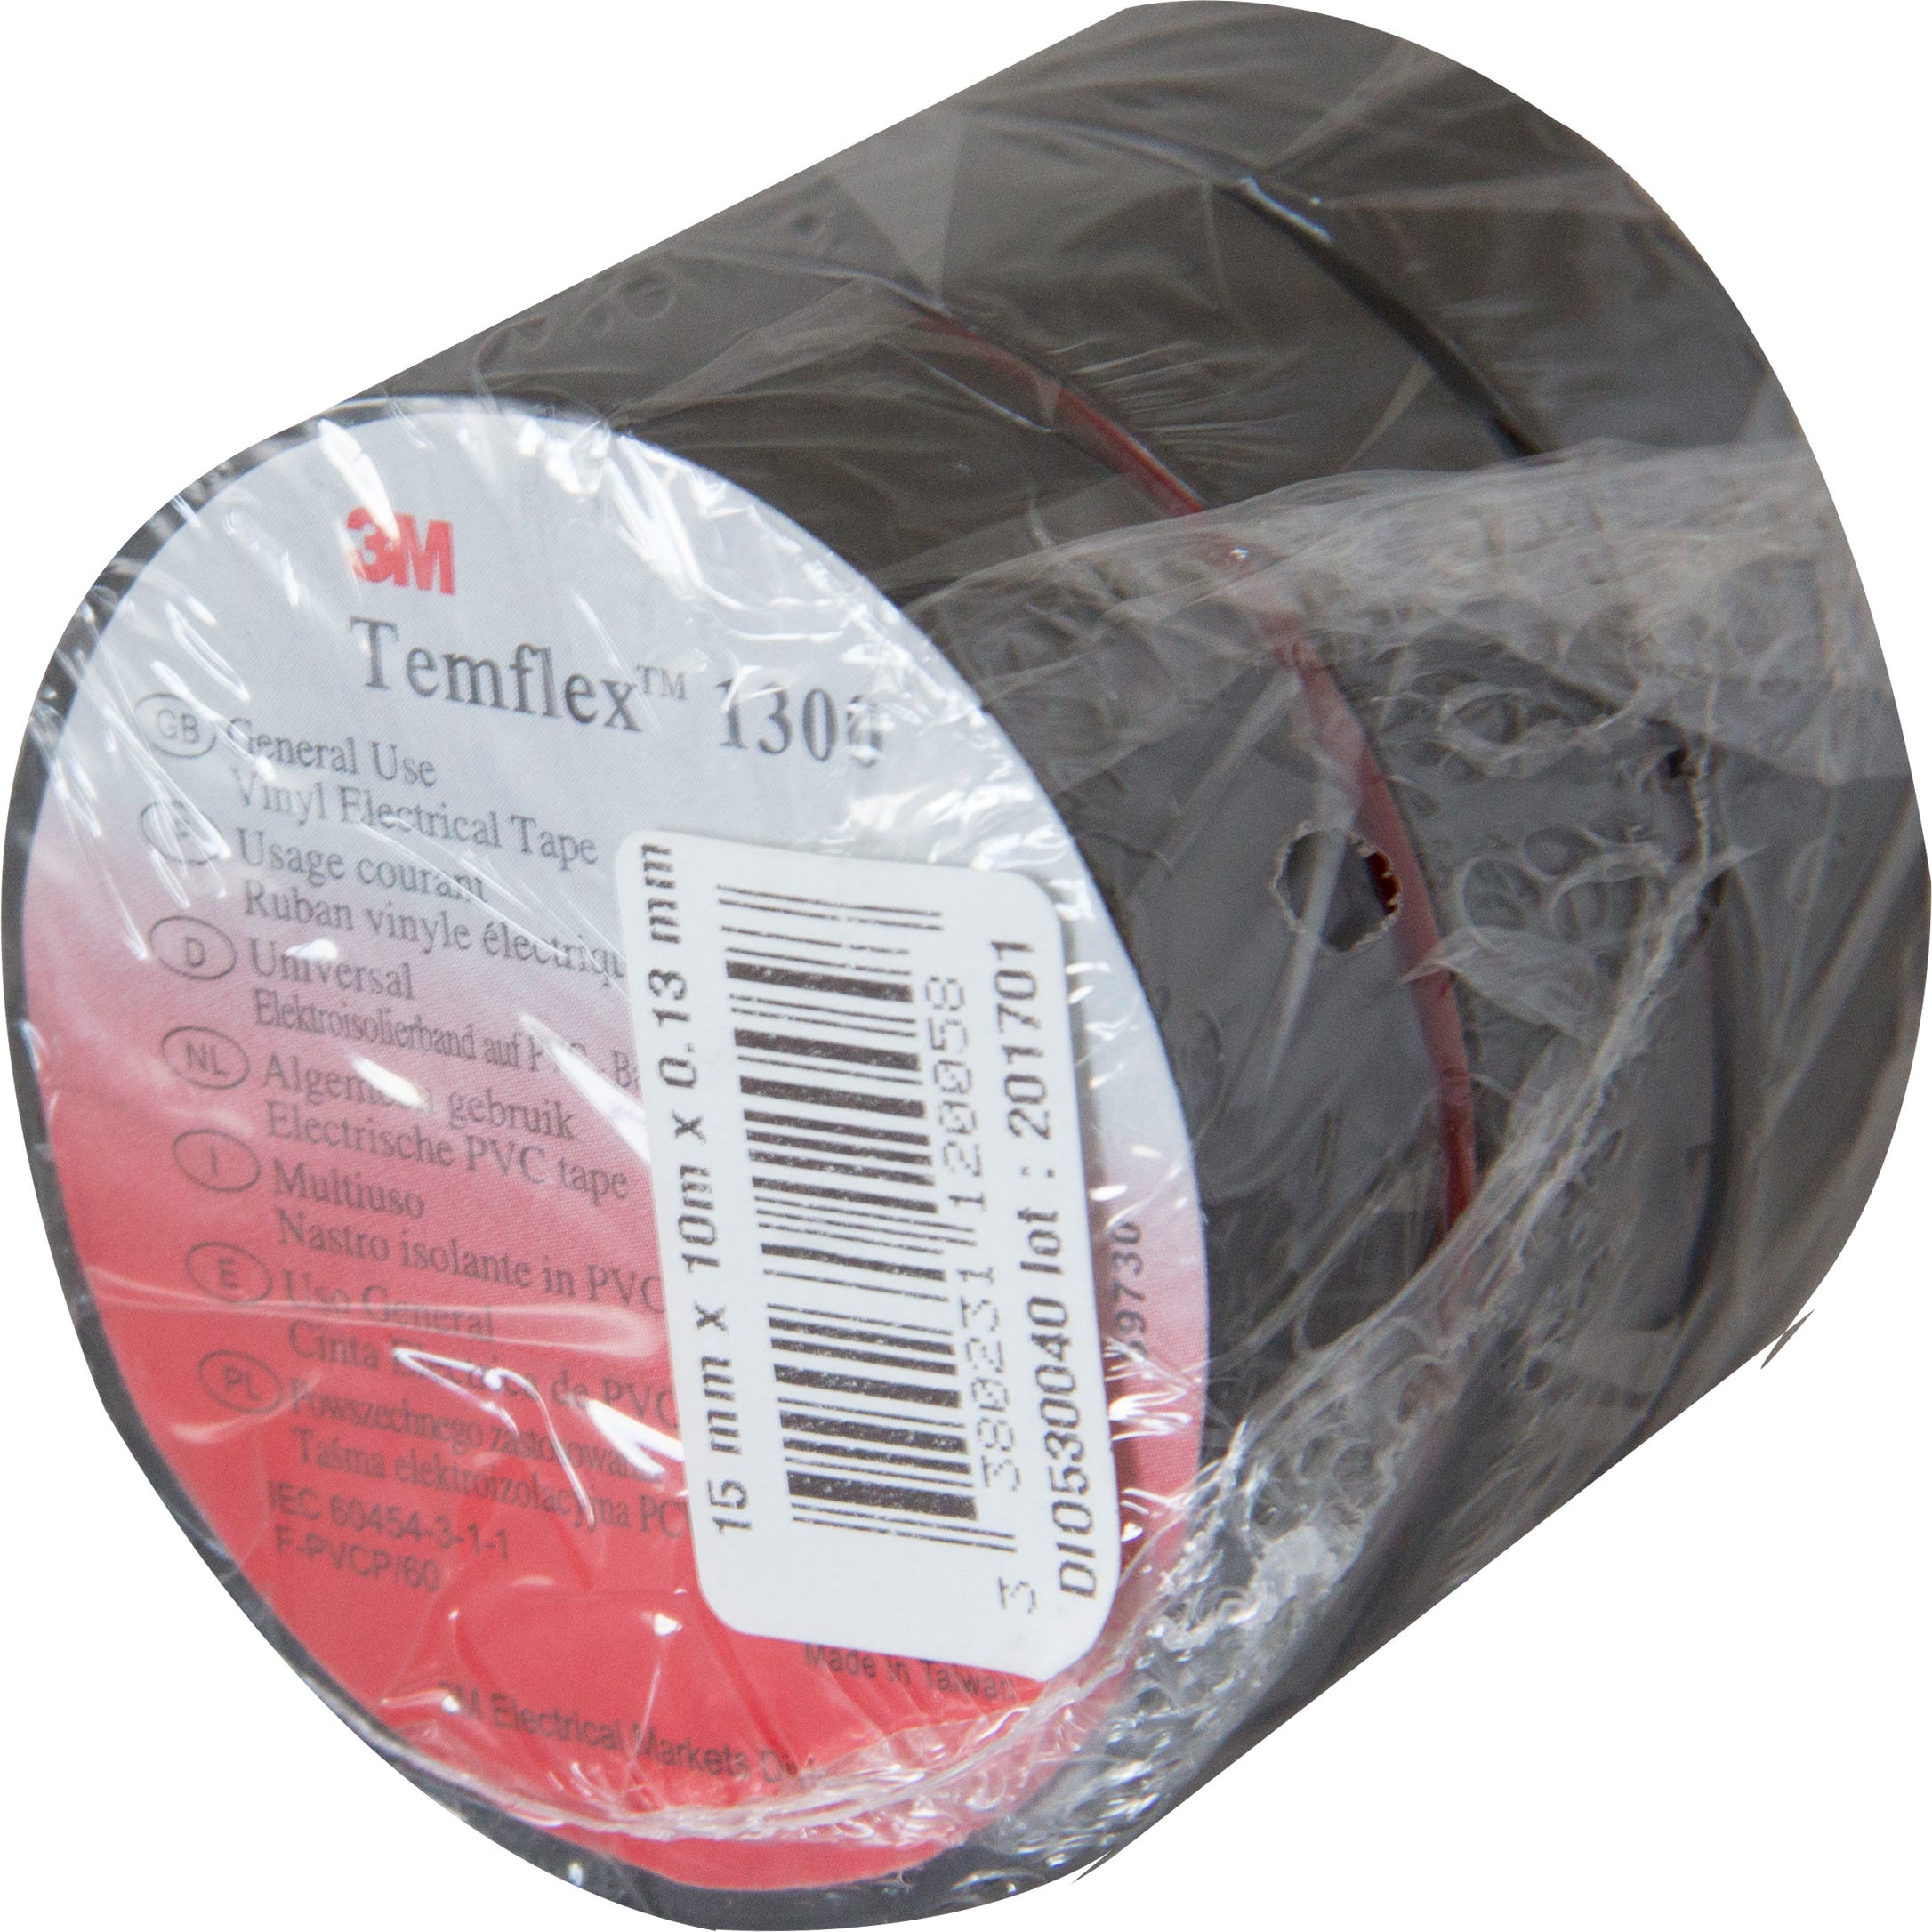 3M Temflex 155 ruban électrique isolant vinyle, rouge, 19 mm x 20